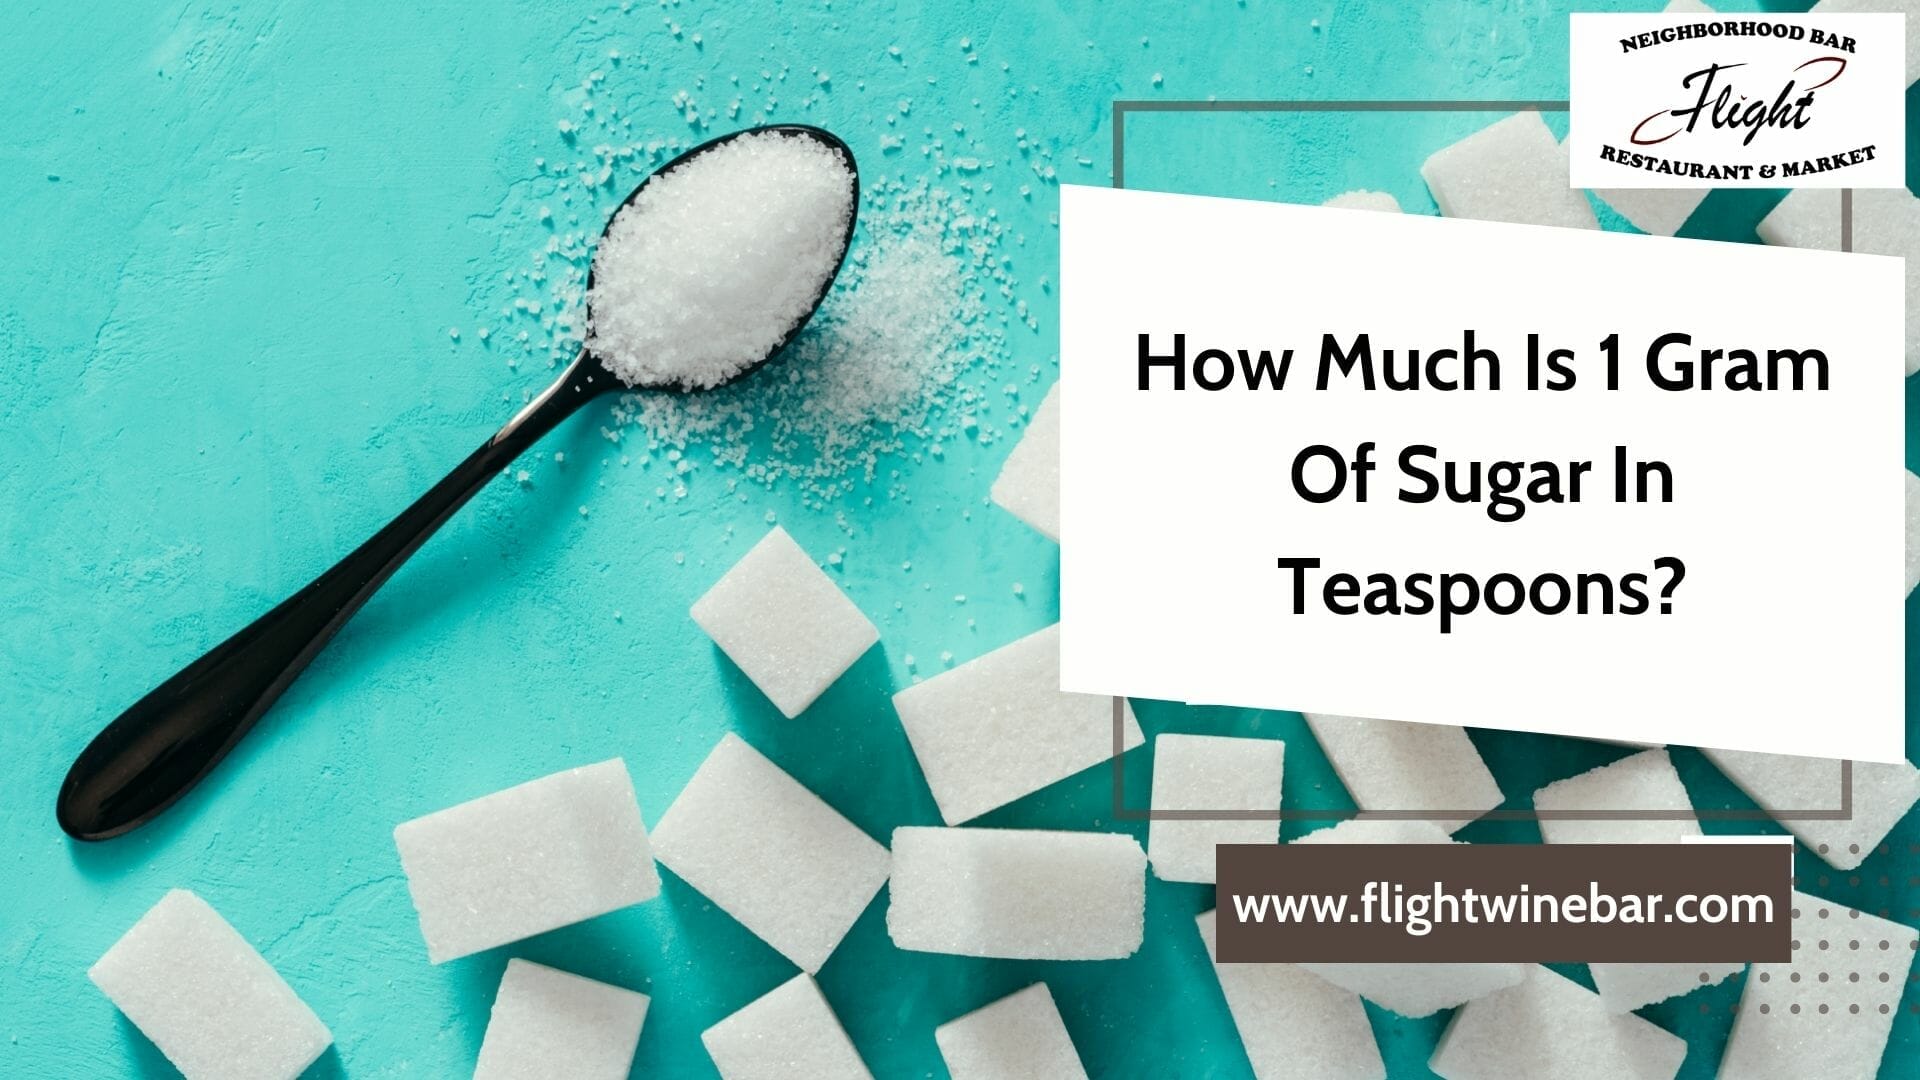 How Much Is 1 Gram Of Sugar In Teaspoons